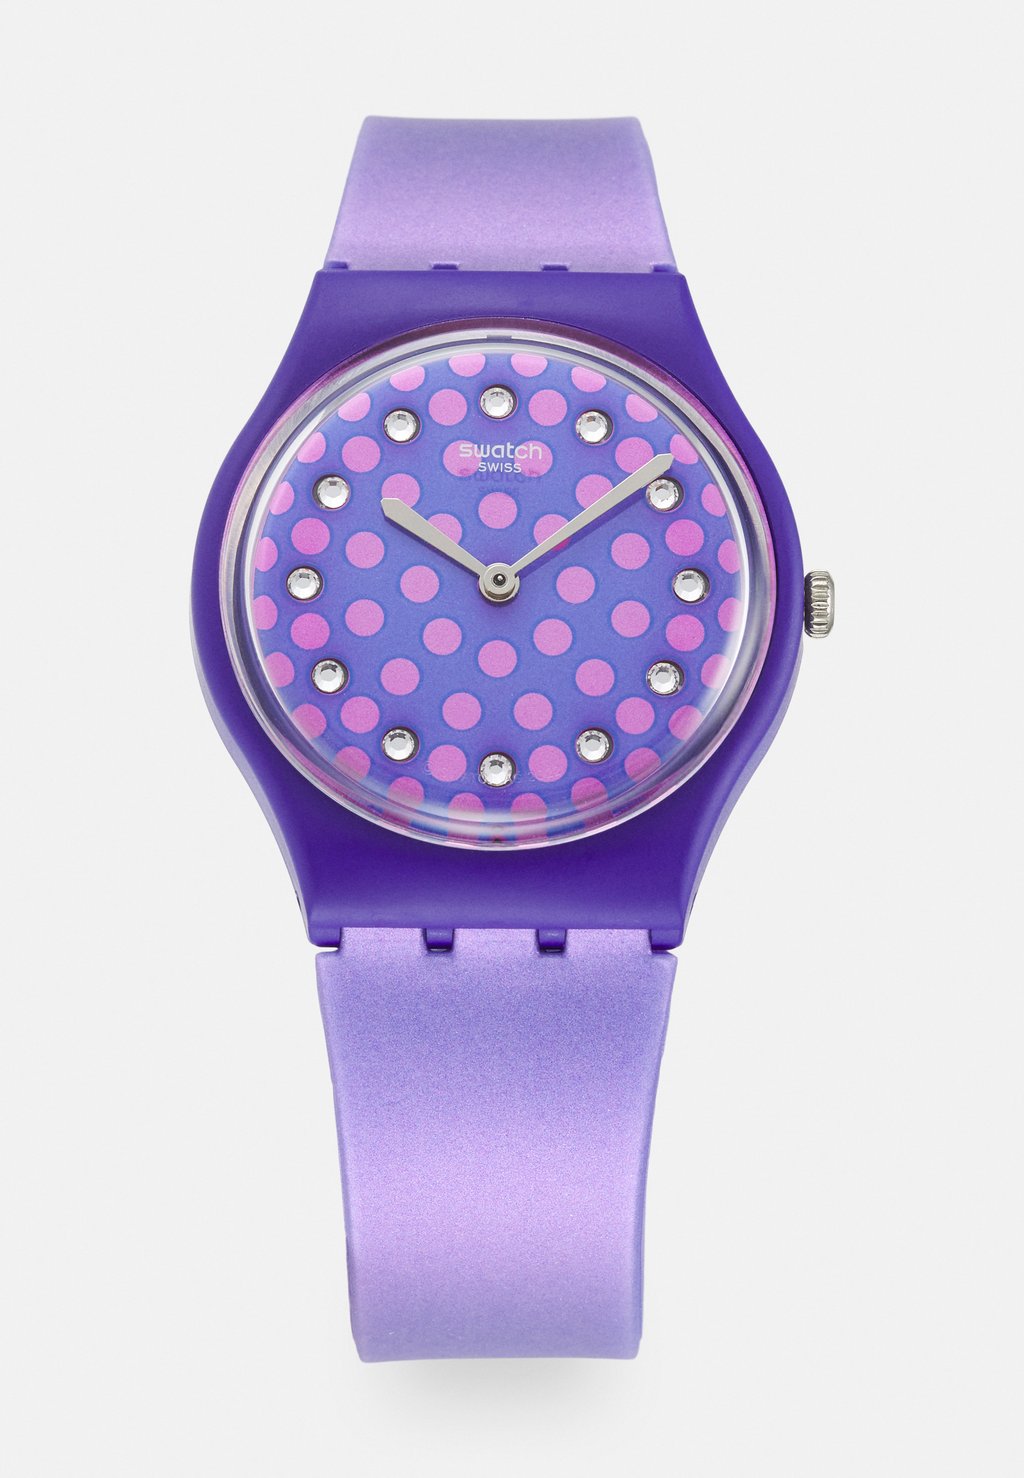 Часы Swatch, фиолетовый